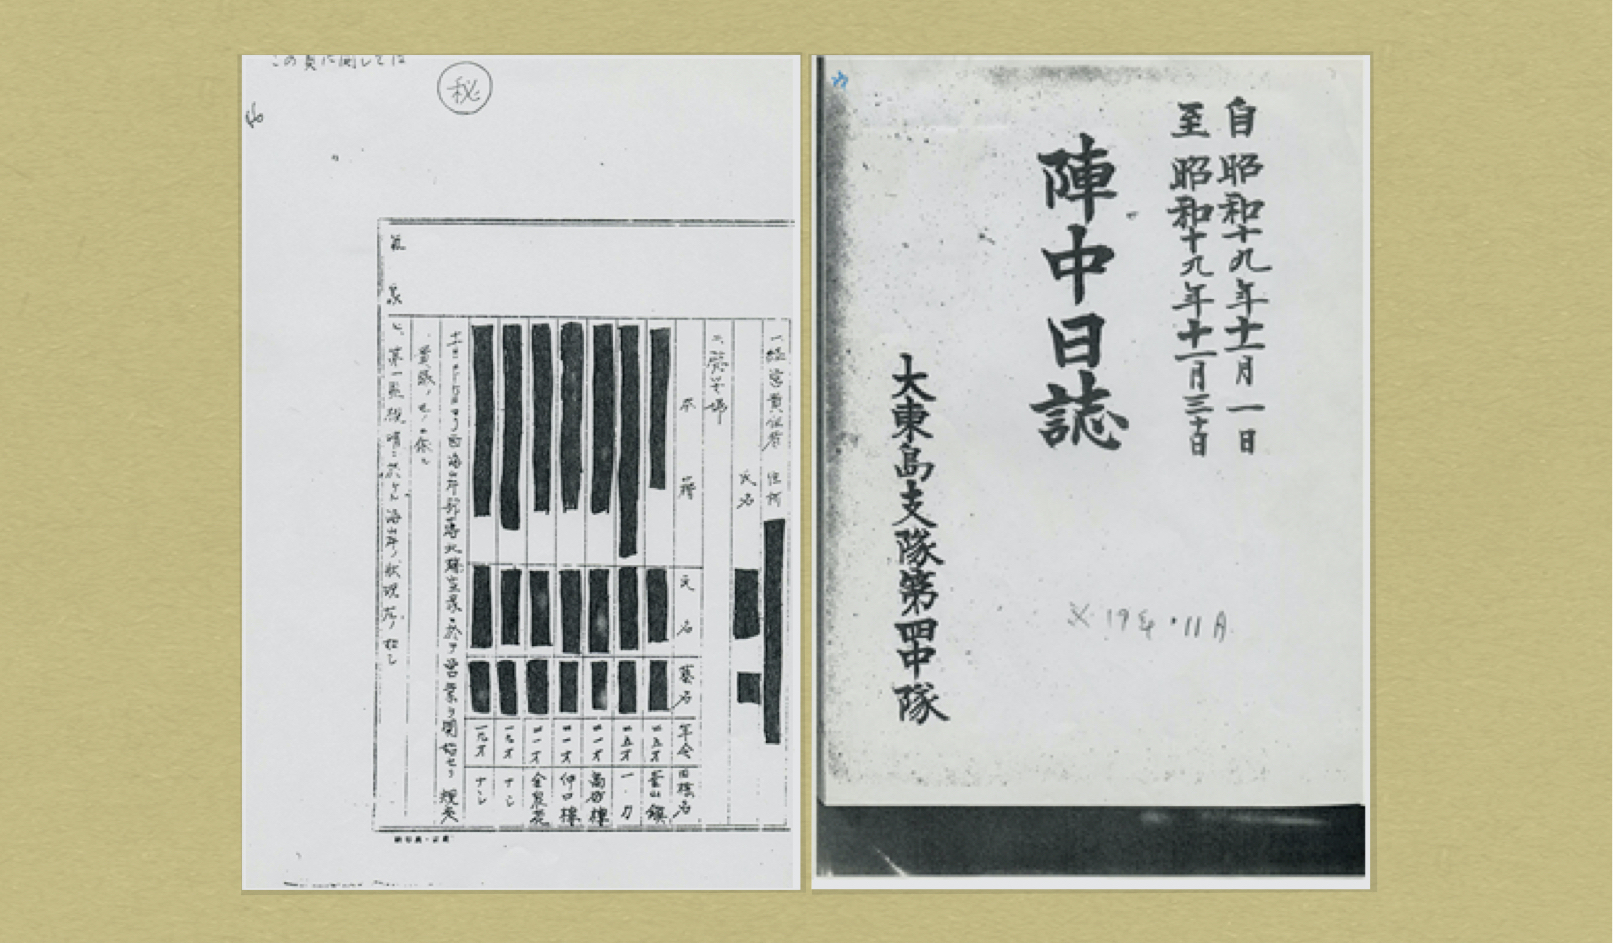 <그림 2> 오키나와 다이토지대 제4중대 진중일지 표지(우)와 그 중에 수록된 명단